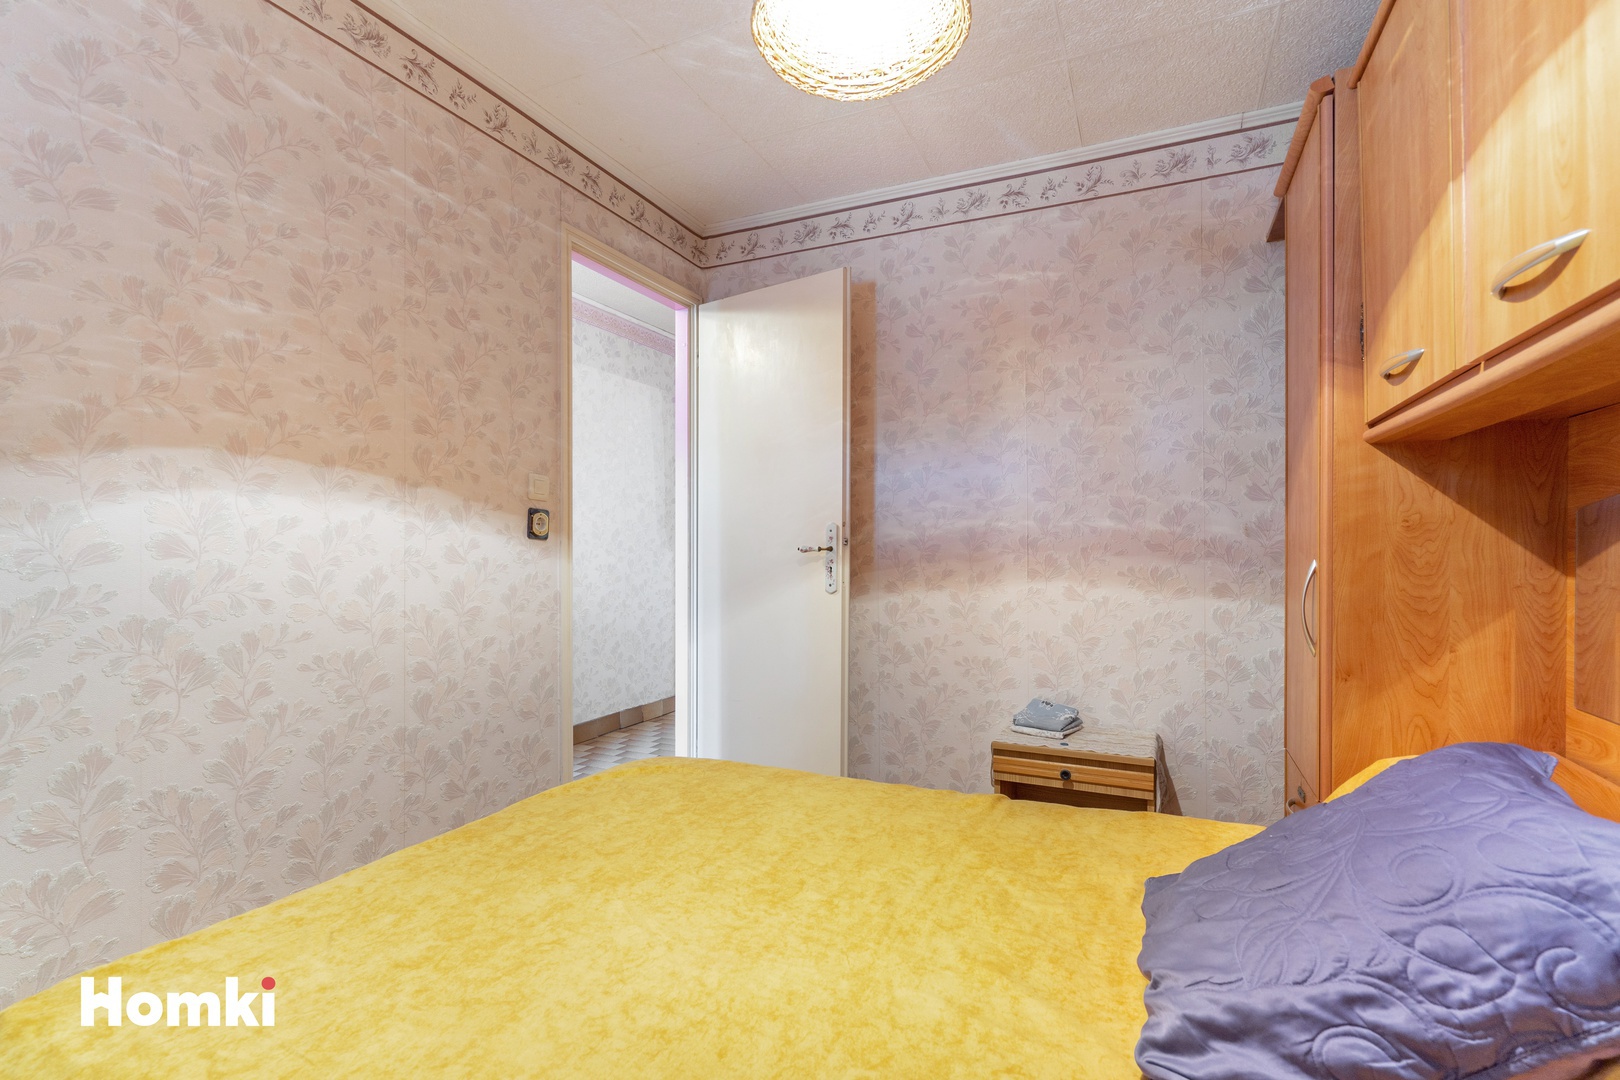 Homki - Vente Appartement  de 35.0 m² à Agde 34300